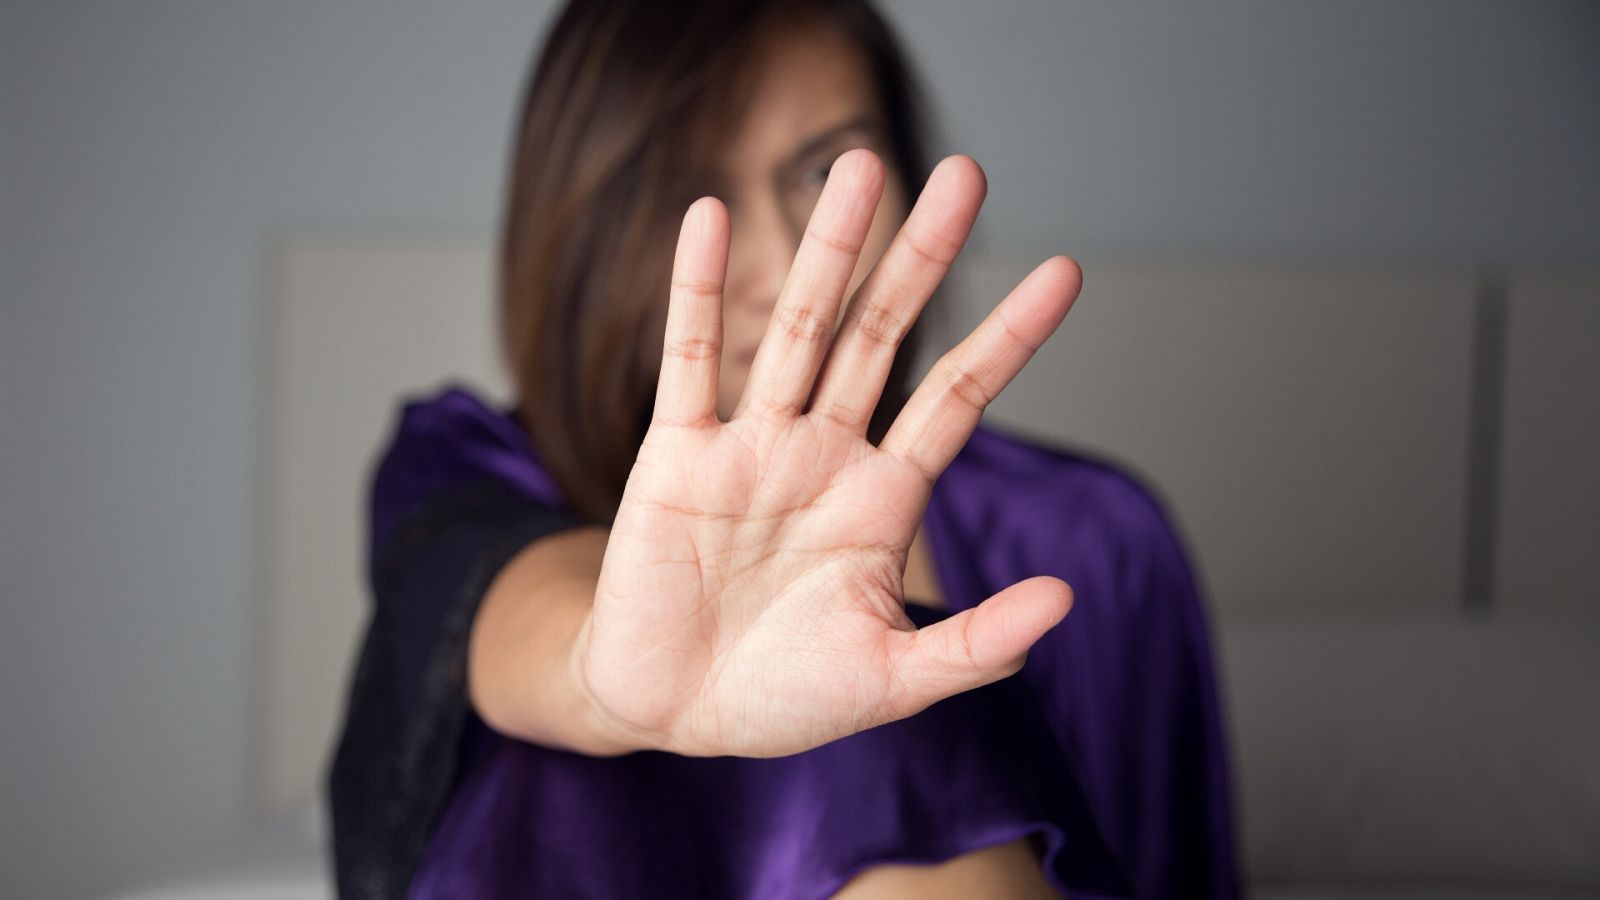 Una mujer levanta la mano en un gesto contra las agresiones sexuales